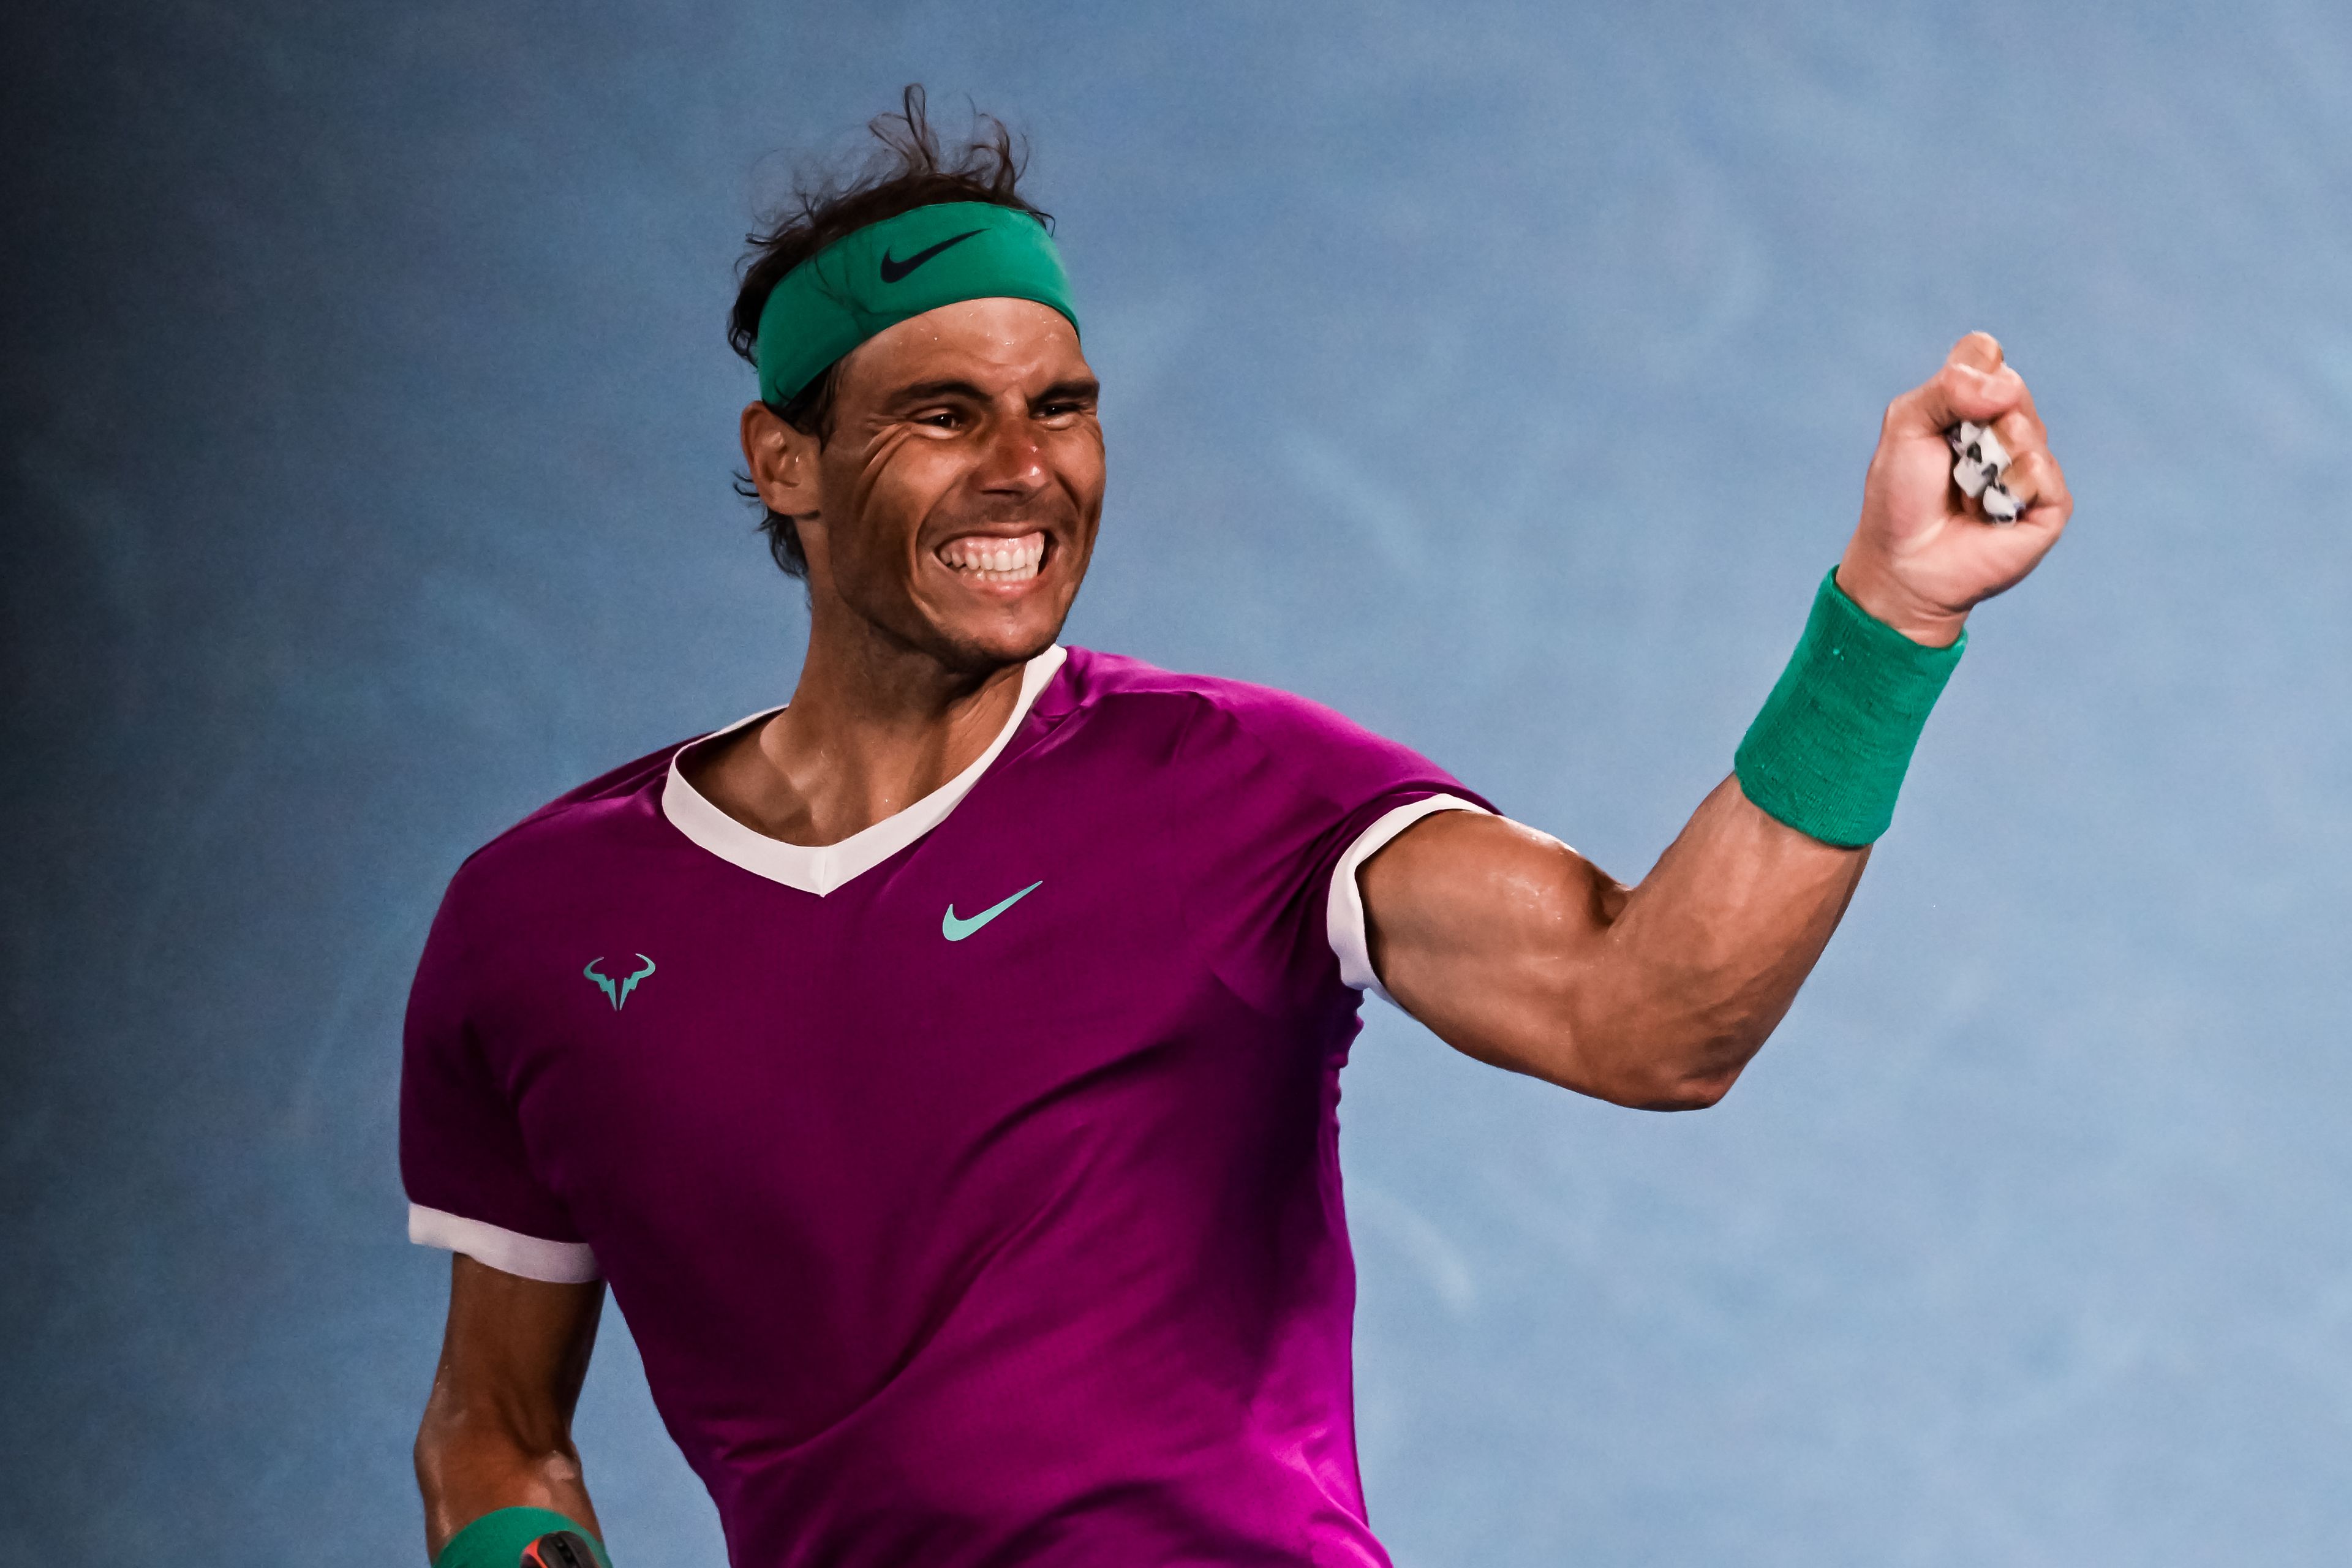 Rafael Nadal 20 GS-győzelemnél jár. A spanyol most előzheti az Ausztráliából kitiltott Novak Djokovicsot és a sérült Roger Federert is / Fotó: Getty Images